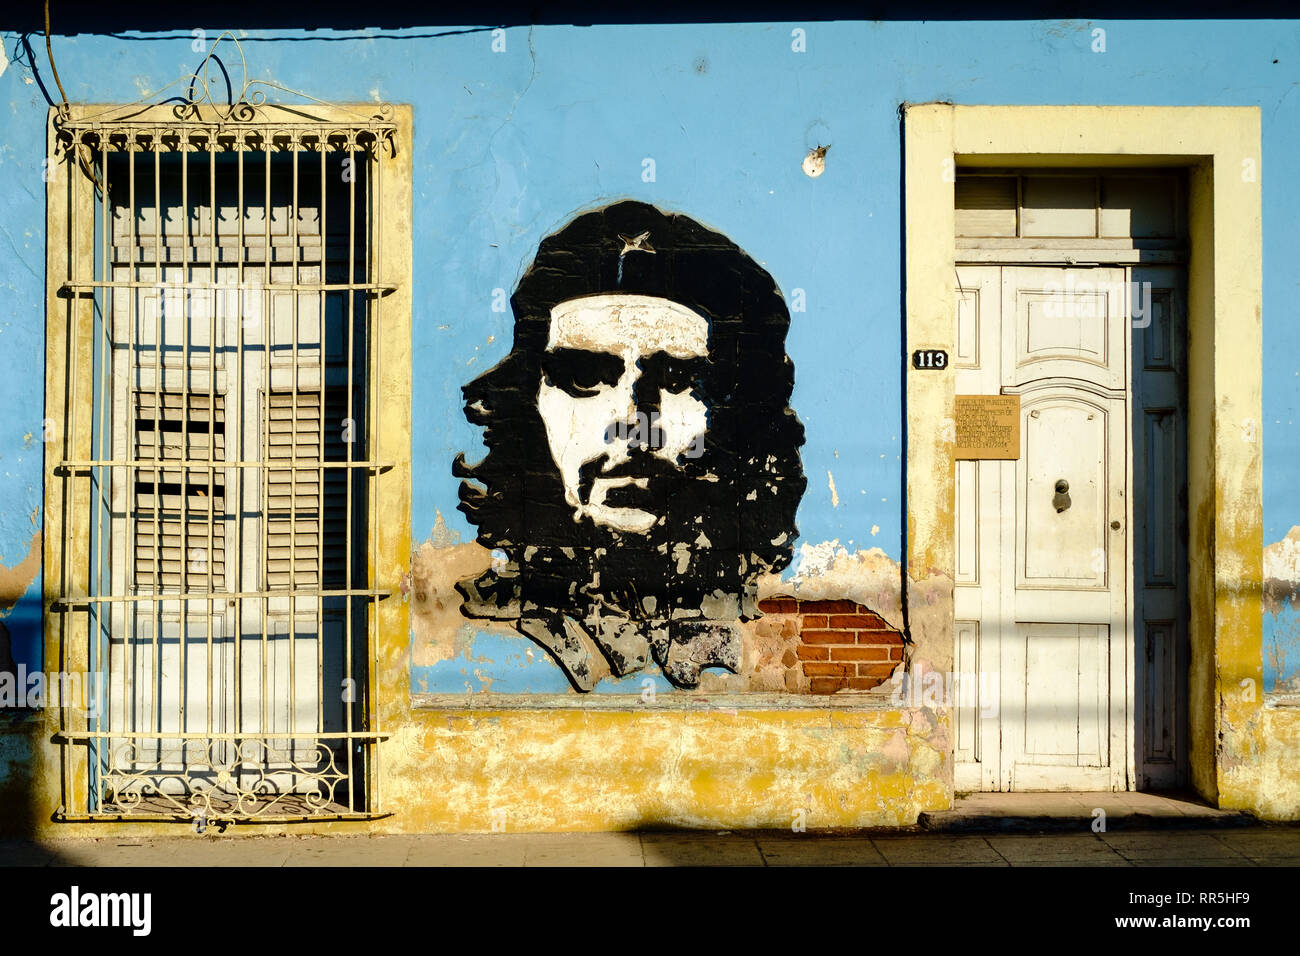 Imagen icónica del Che Guevara como Graffiti en Trinidad, Cuba Foto de stock